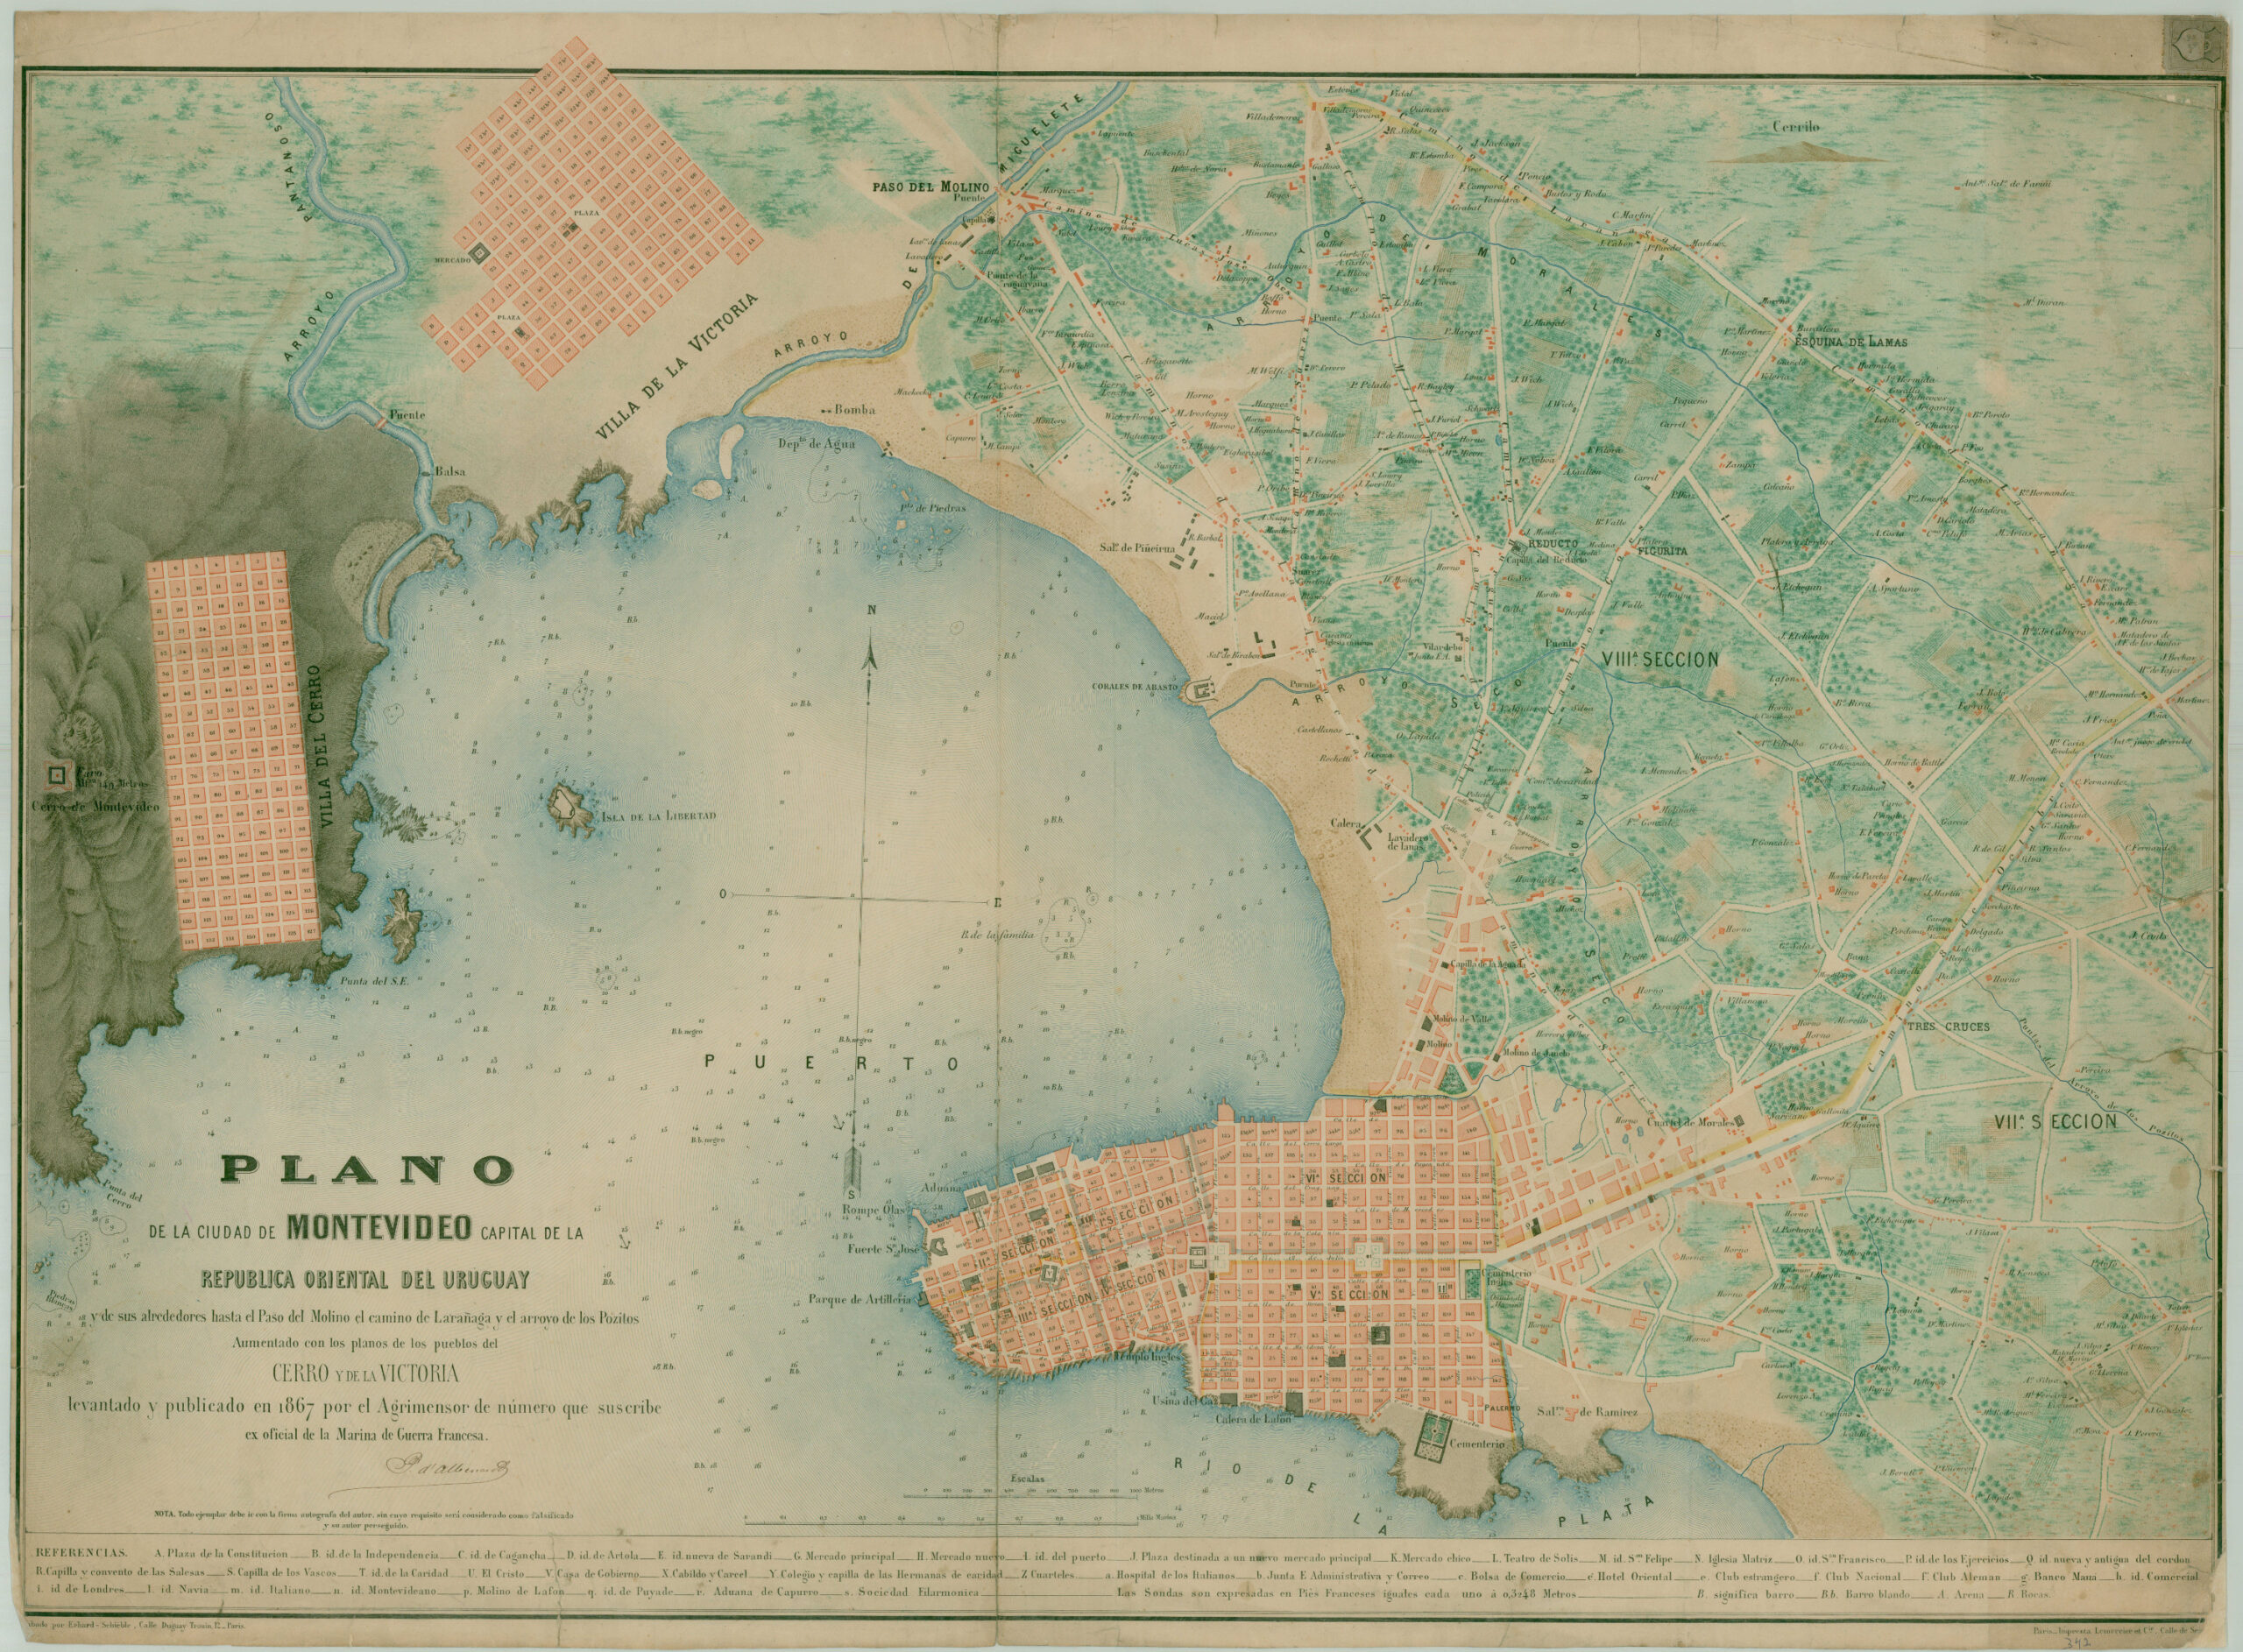 Plano de la ciudad de Montevideo (1867)